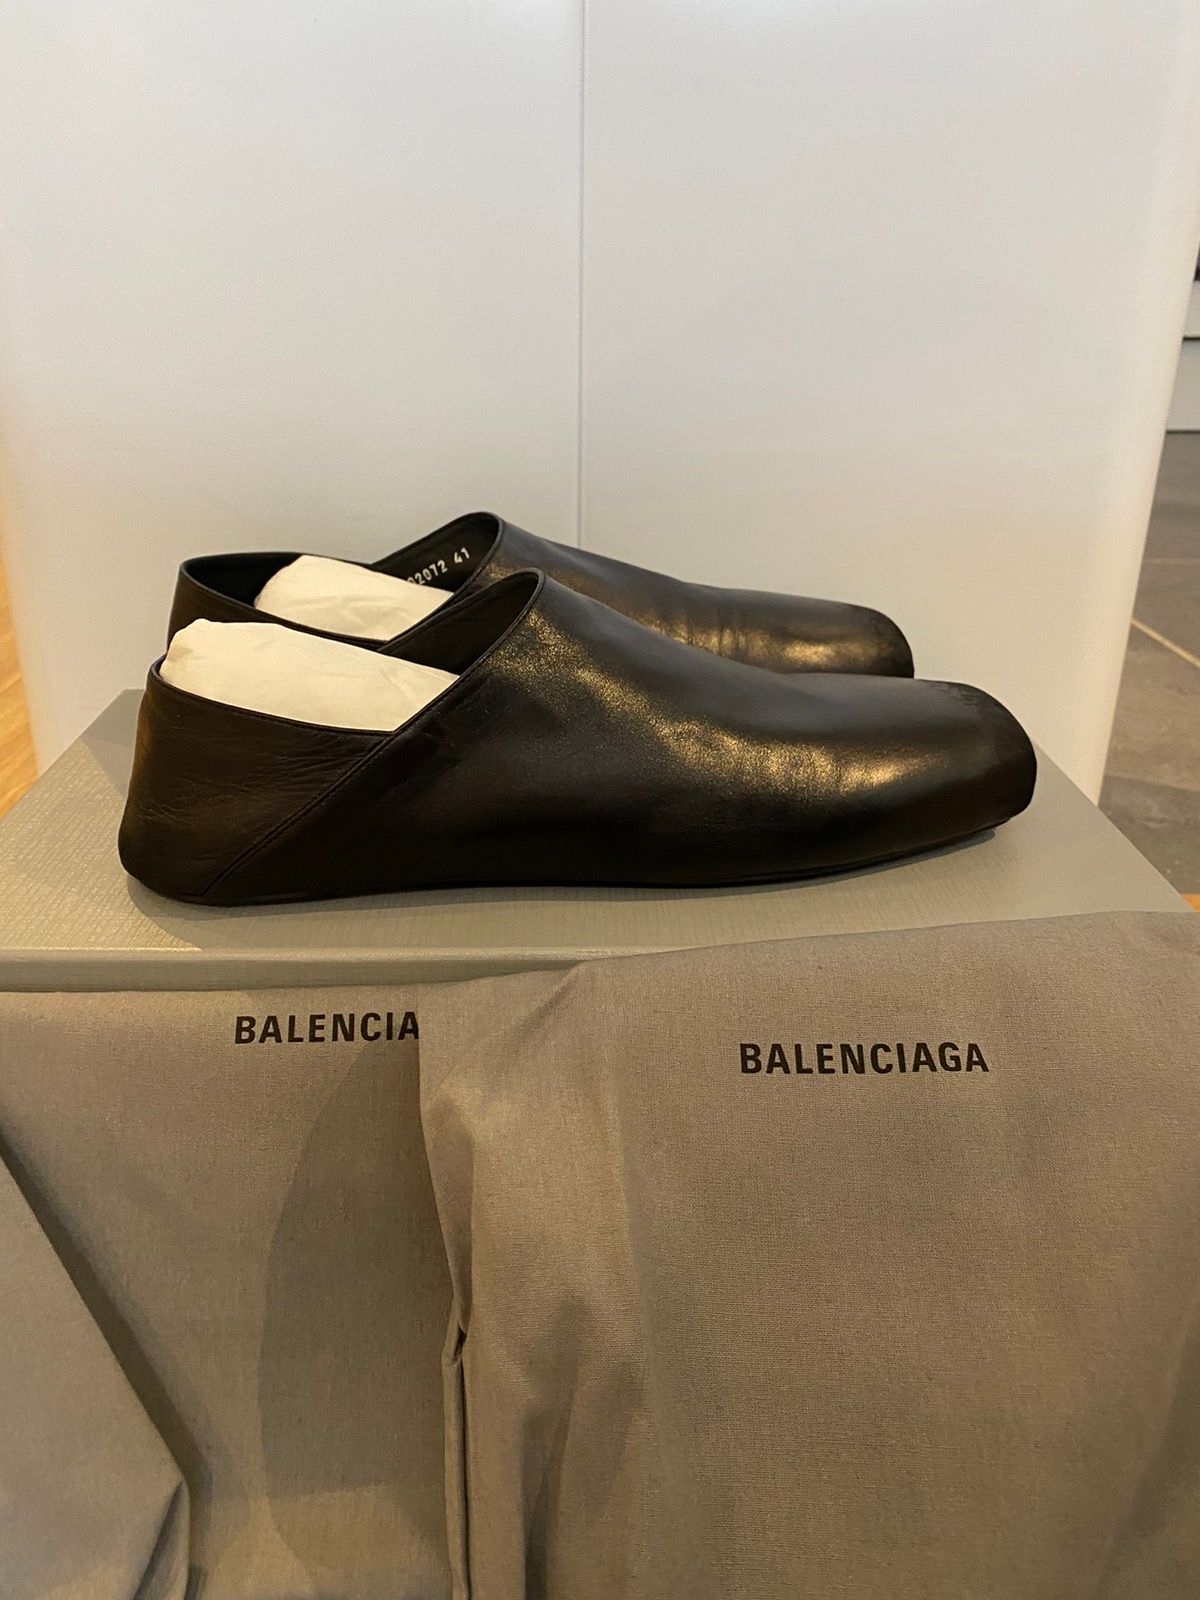 Balenciaga Balenciaga Kensington mule | Grailed